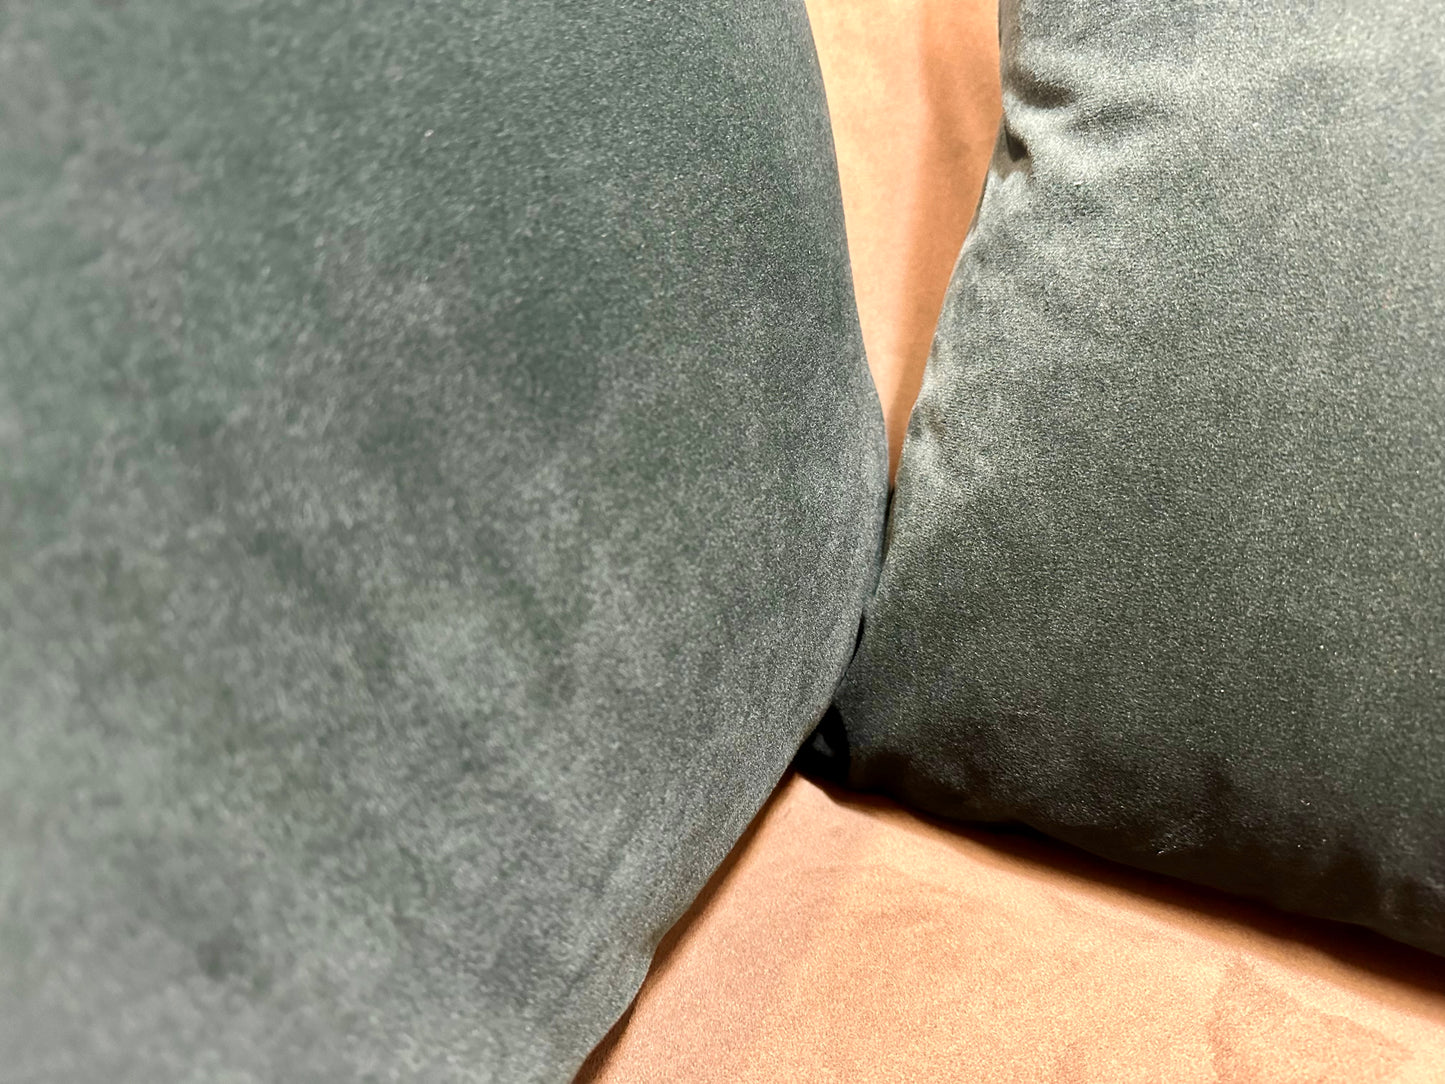 Julius  Set of 2 Velvet Cushions, 45 x 45cm, Forest Green